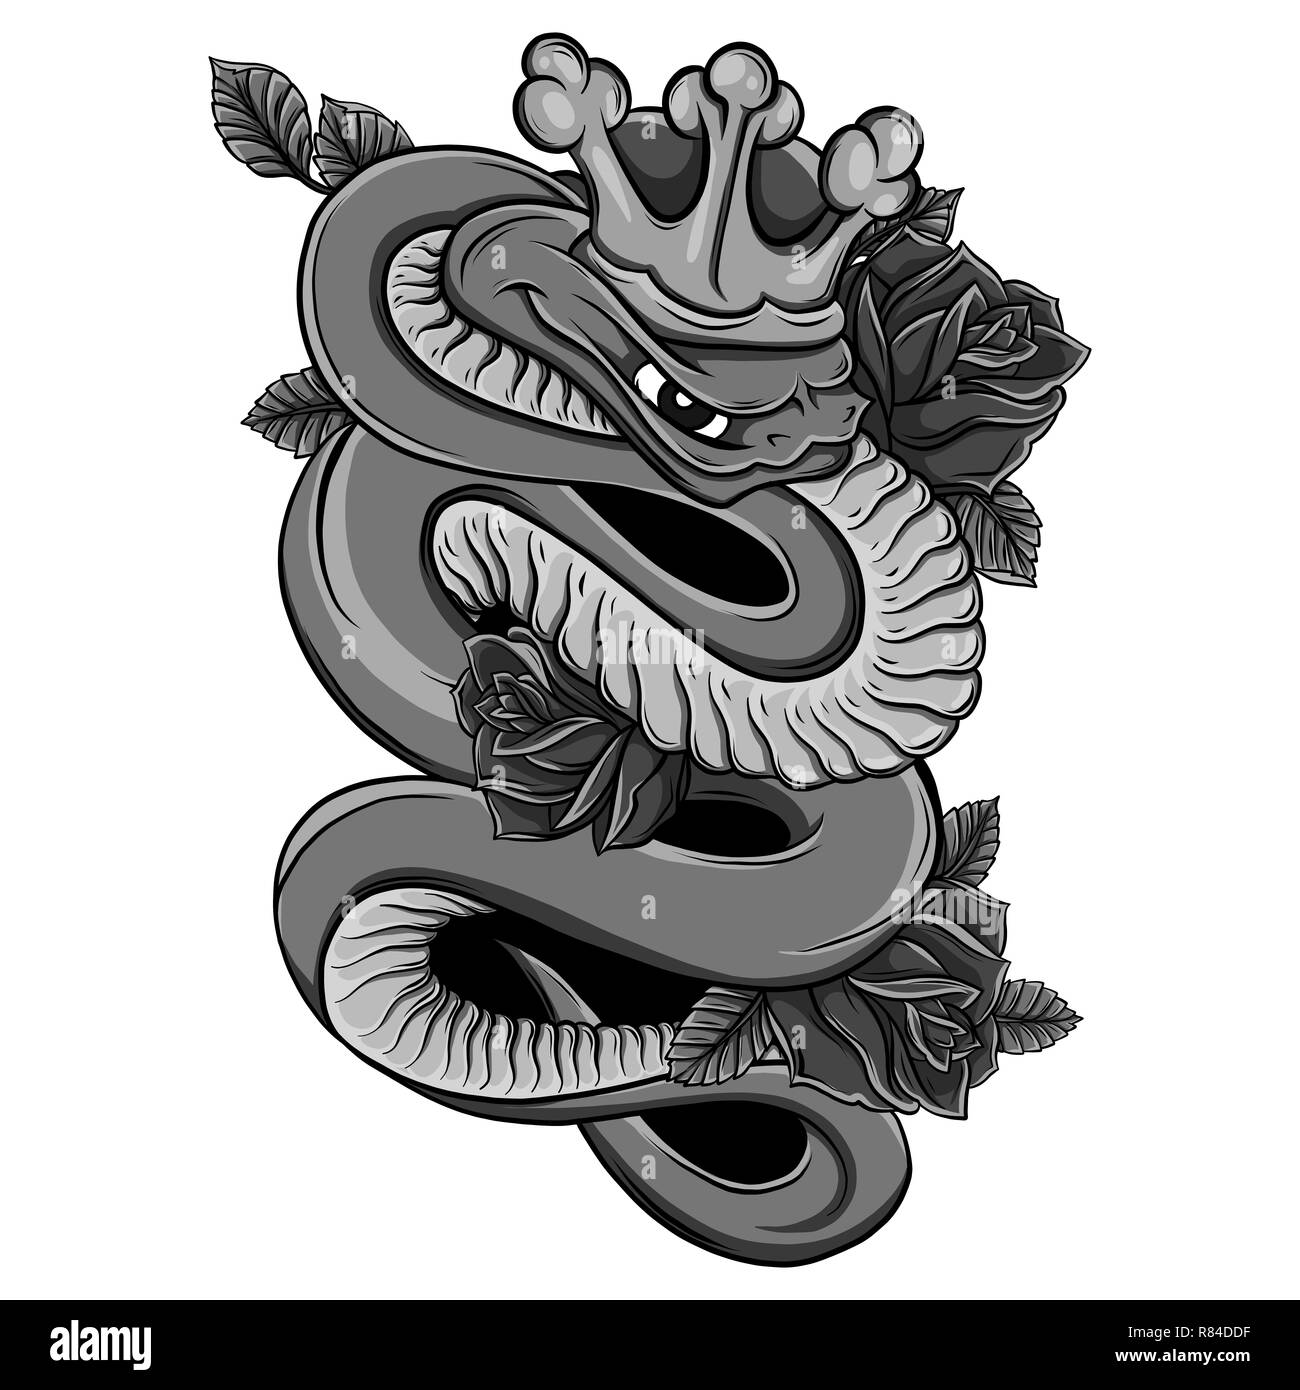 Viper snake illustrazione. Tecnica di inchiostro, buona per poster, adesivo, tee shirt design. Foto Stock